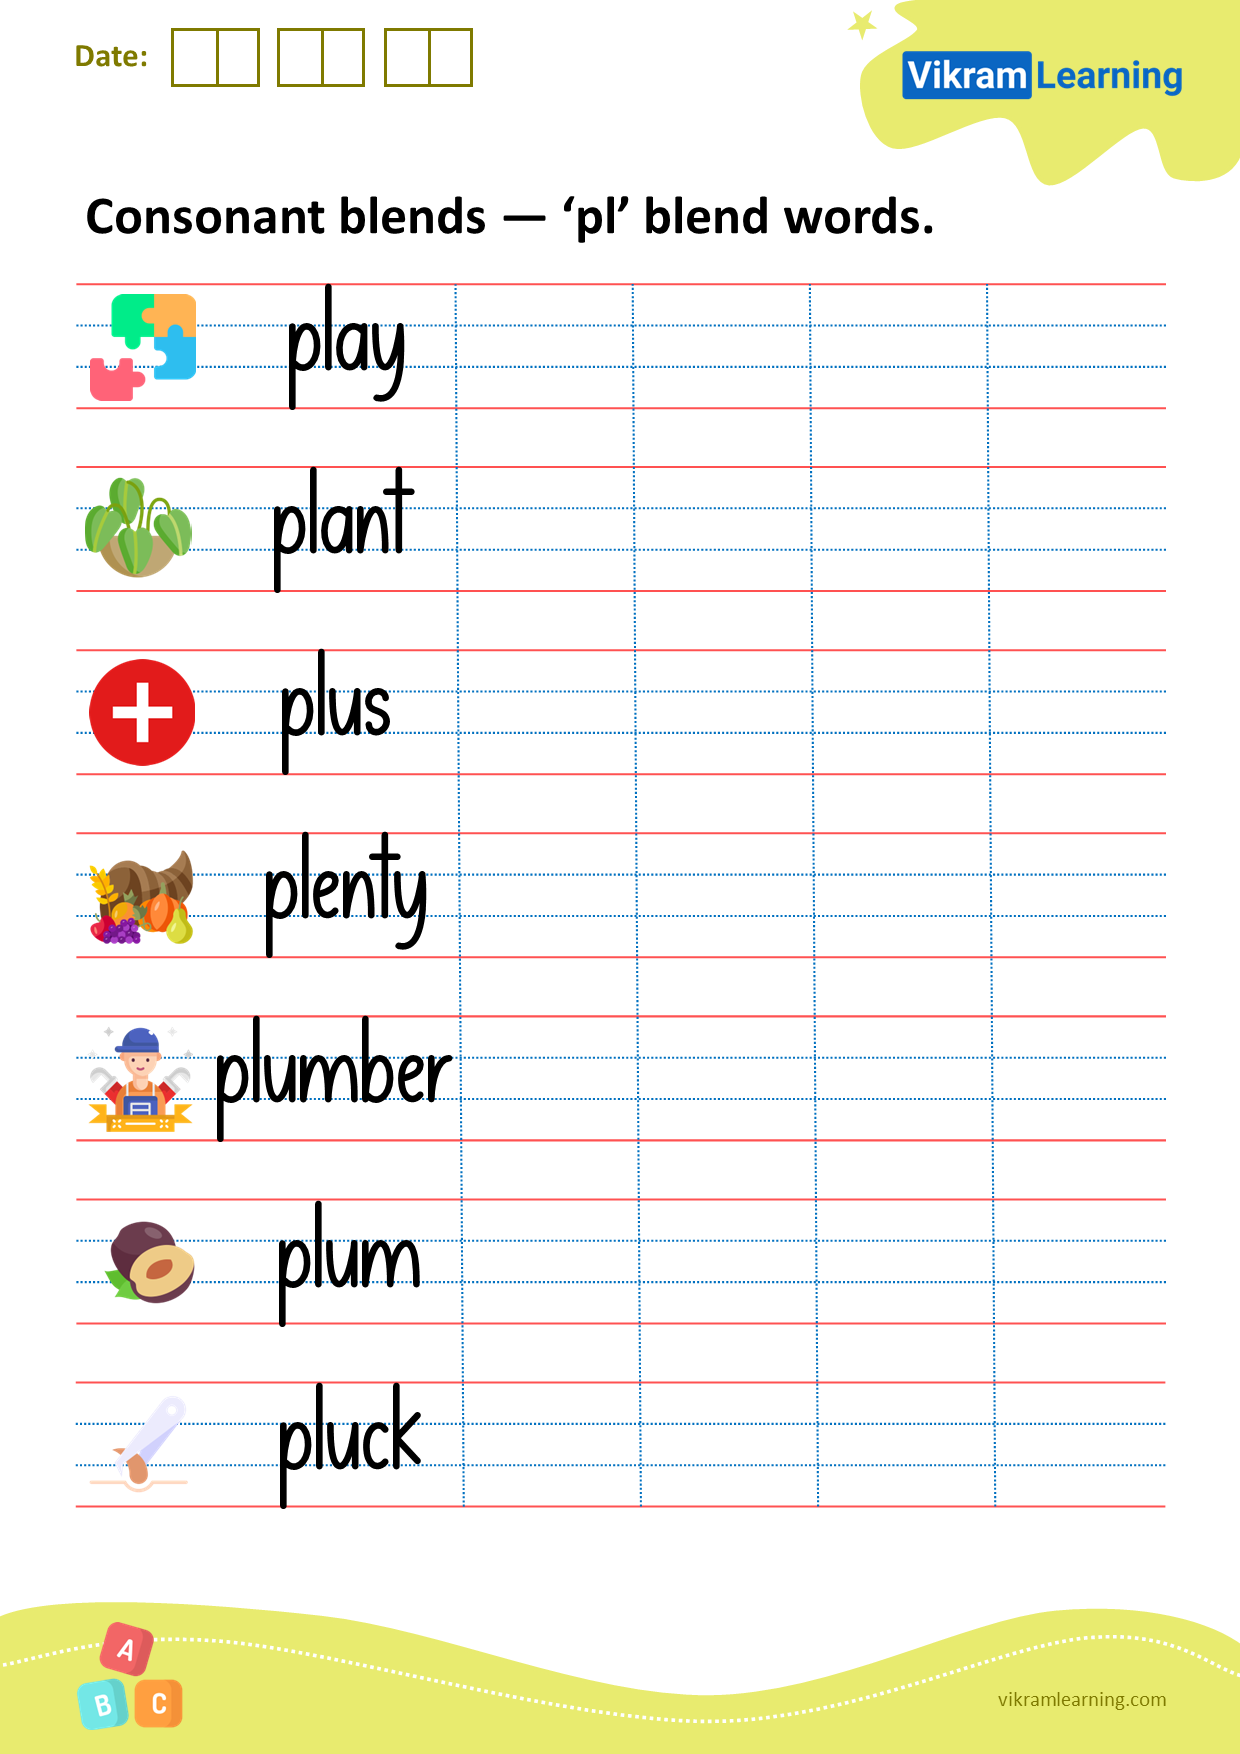 download-consonant-blends-pl-blend-words-worksheets